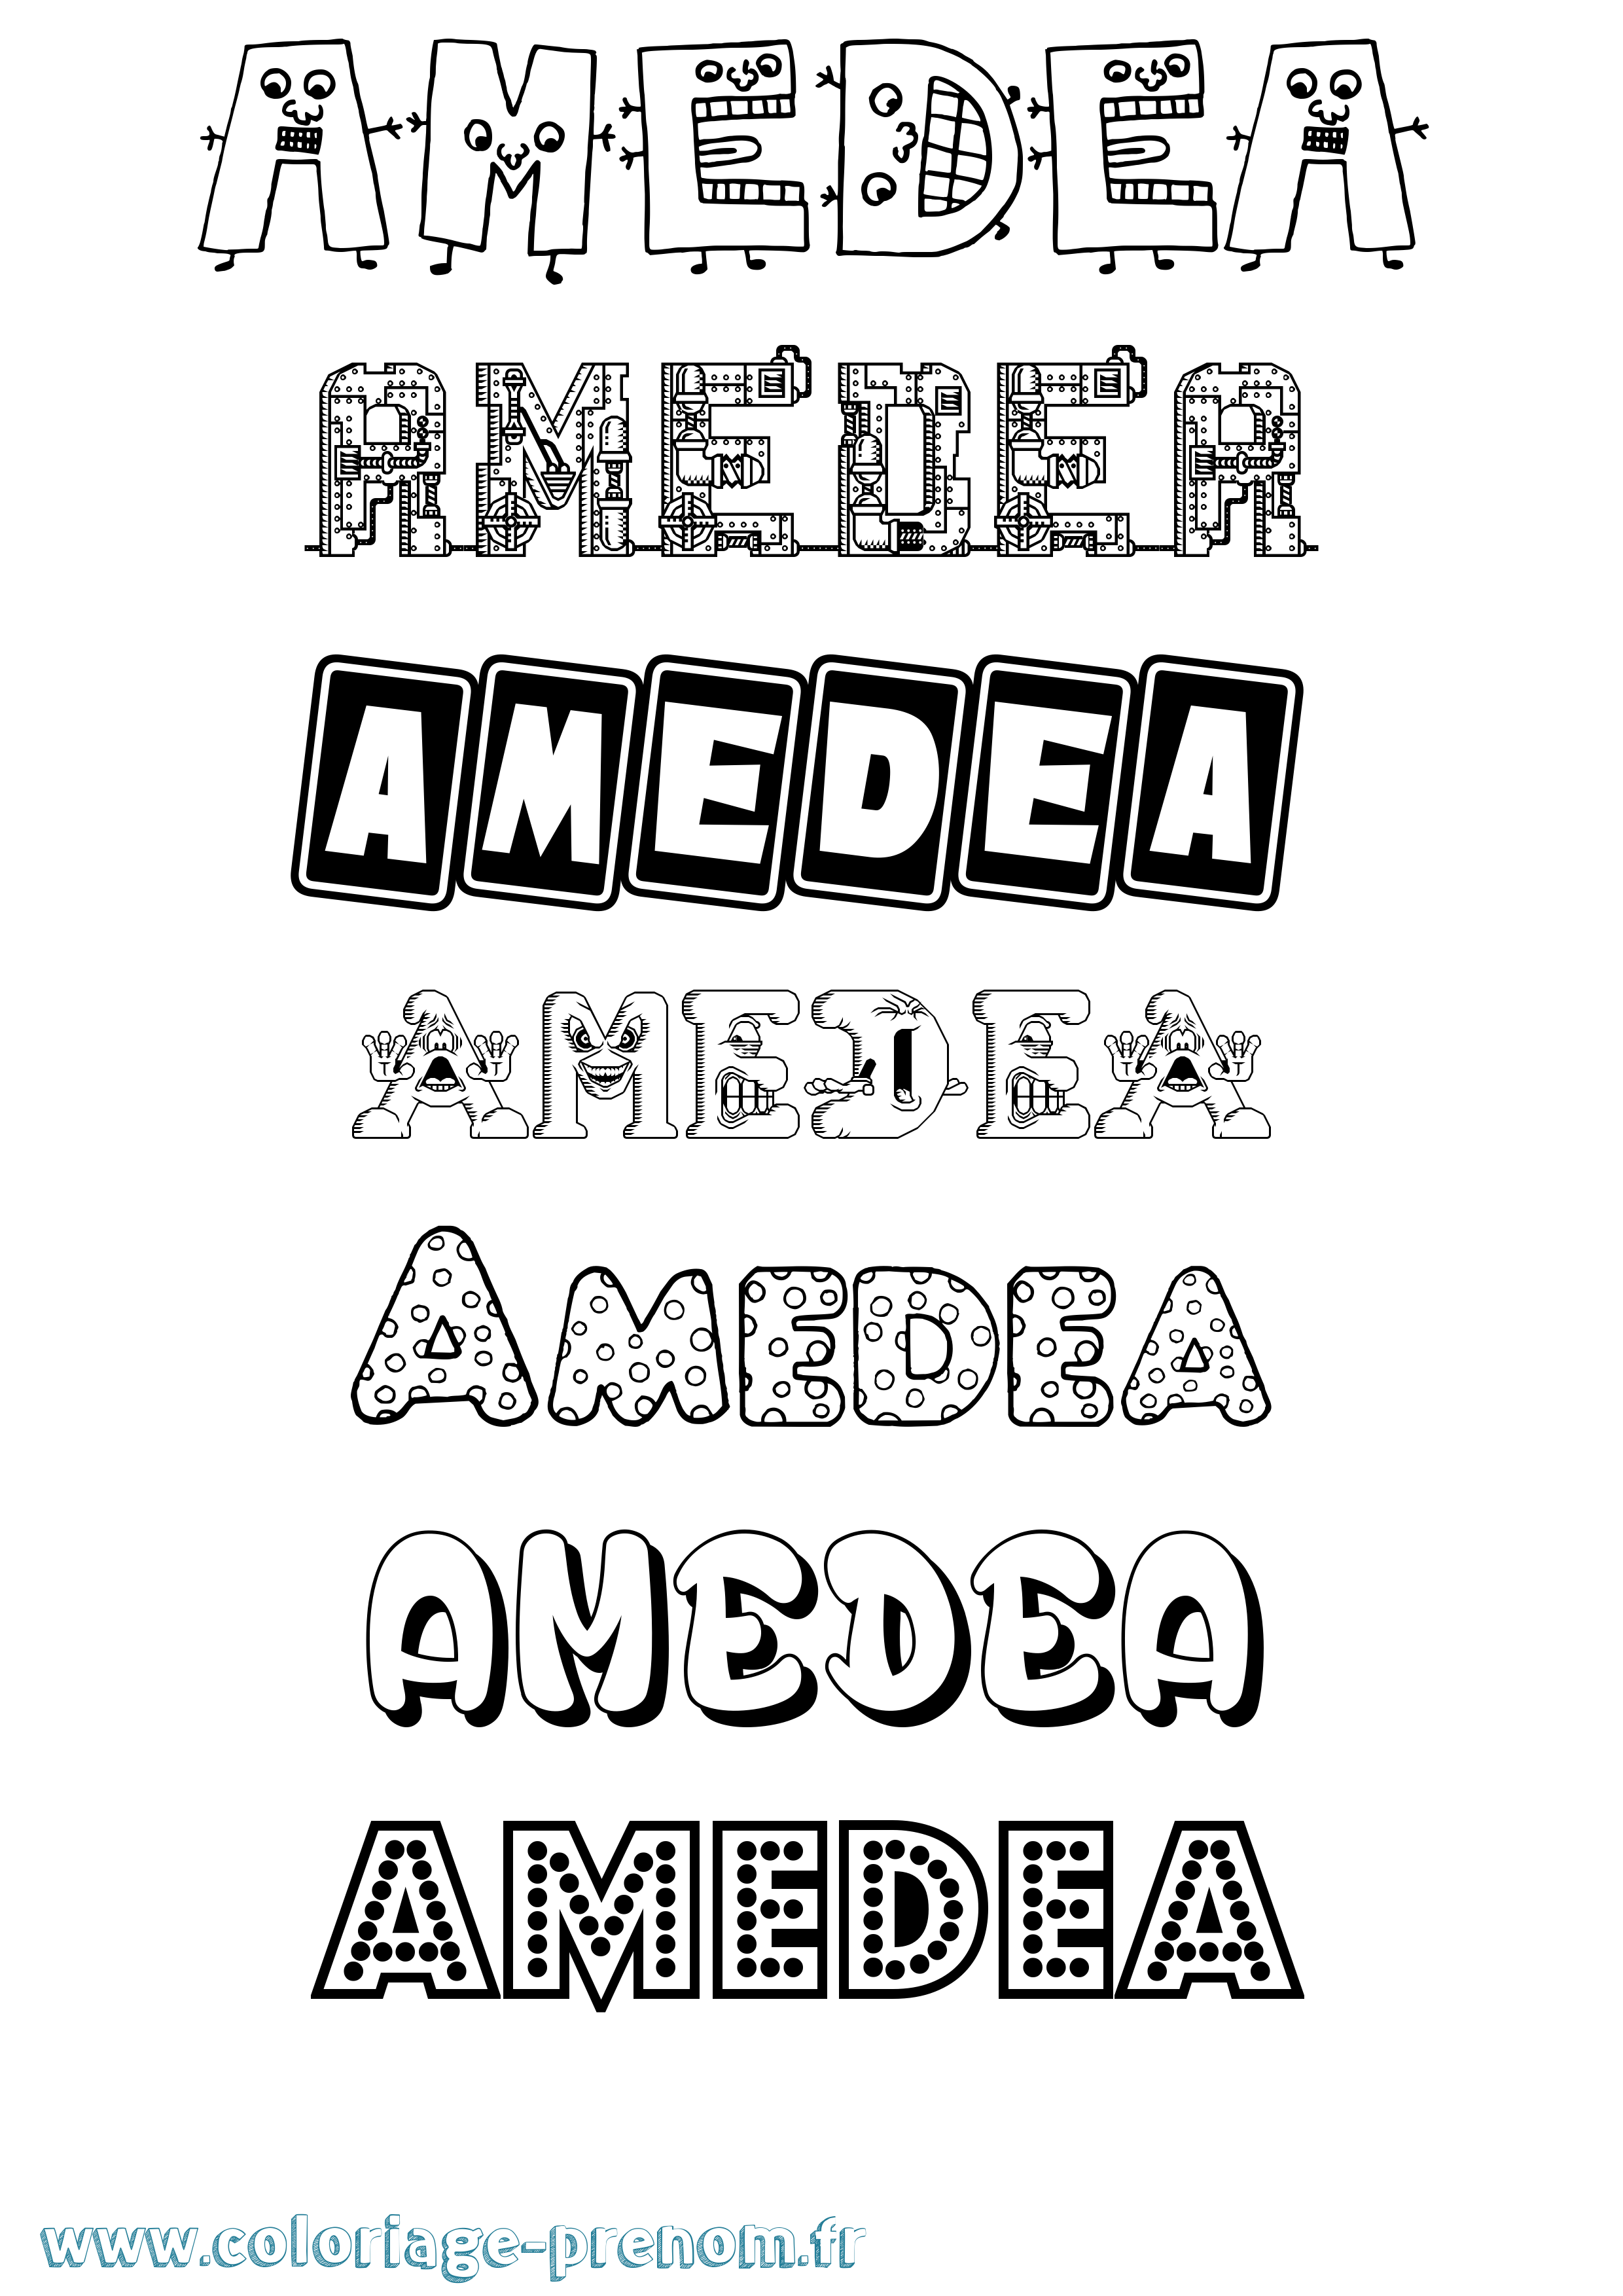 Coloriage prénom Amedea Fun